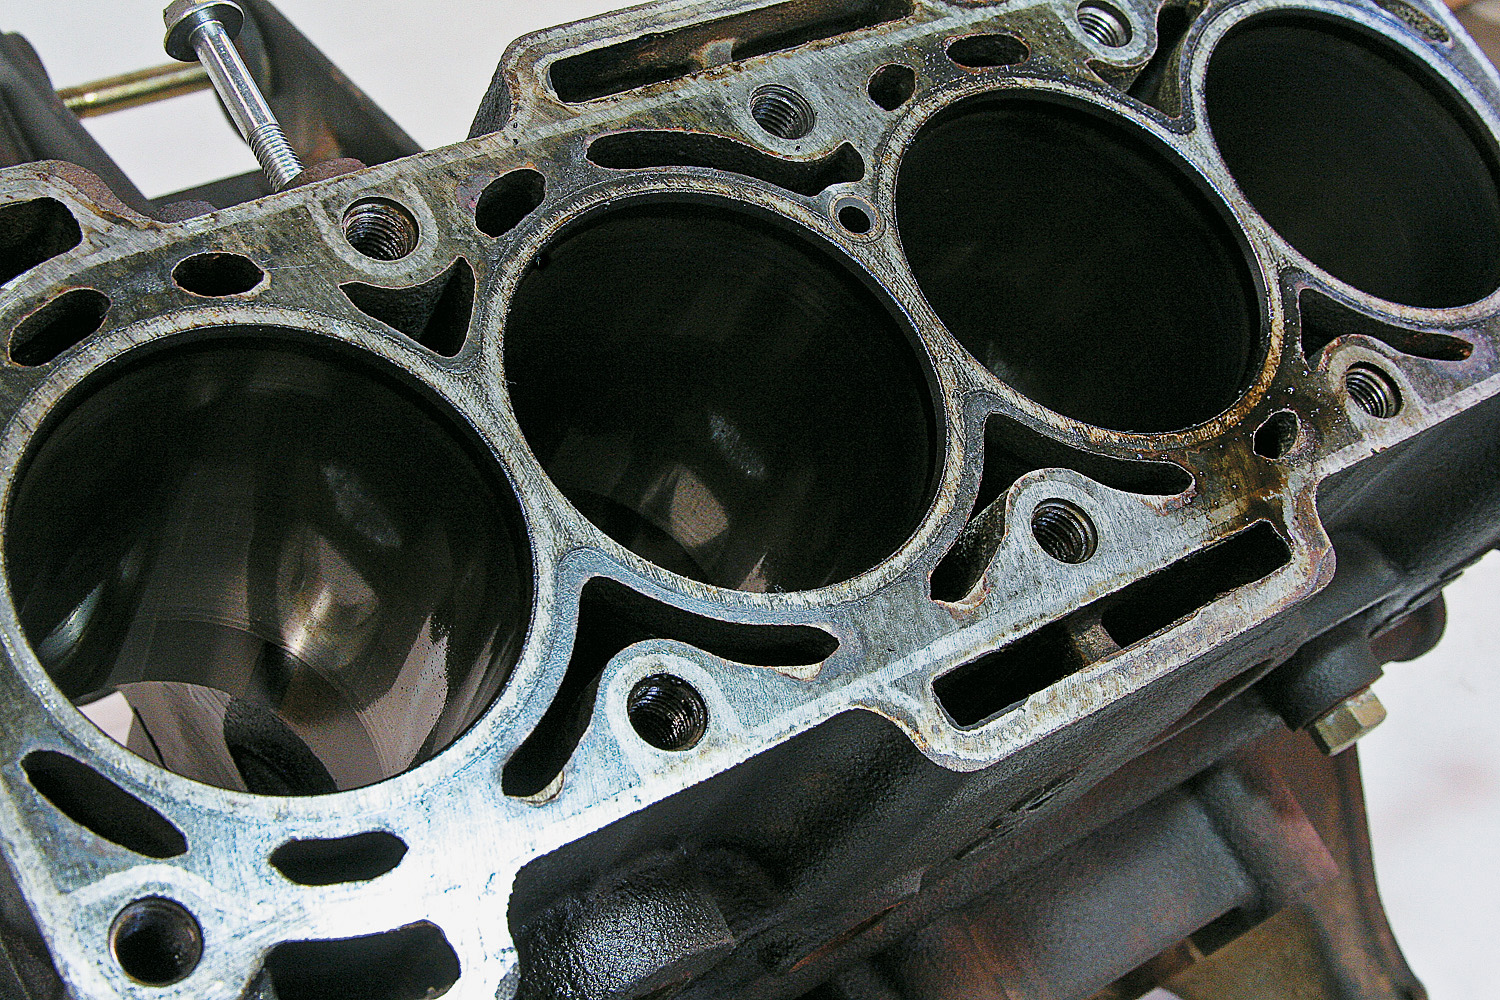 Bloco do motor do Effa M100 1.0, da Effa, após desmonte do teste de longa duração da revista Quatro Rodas.